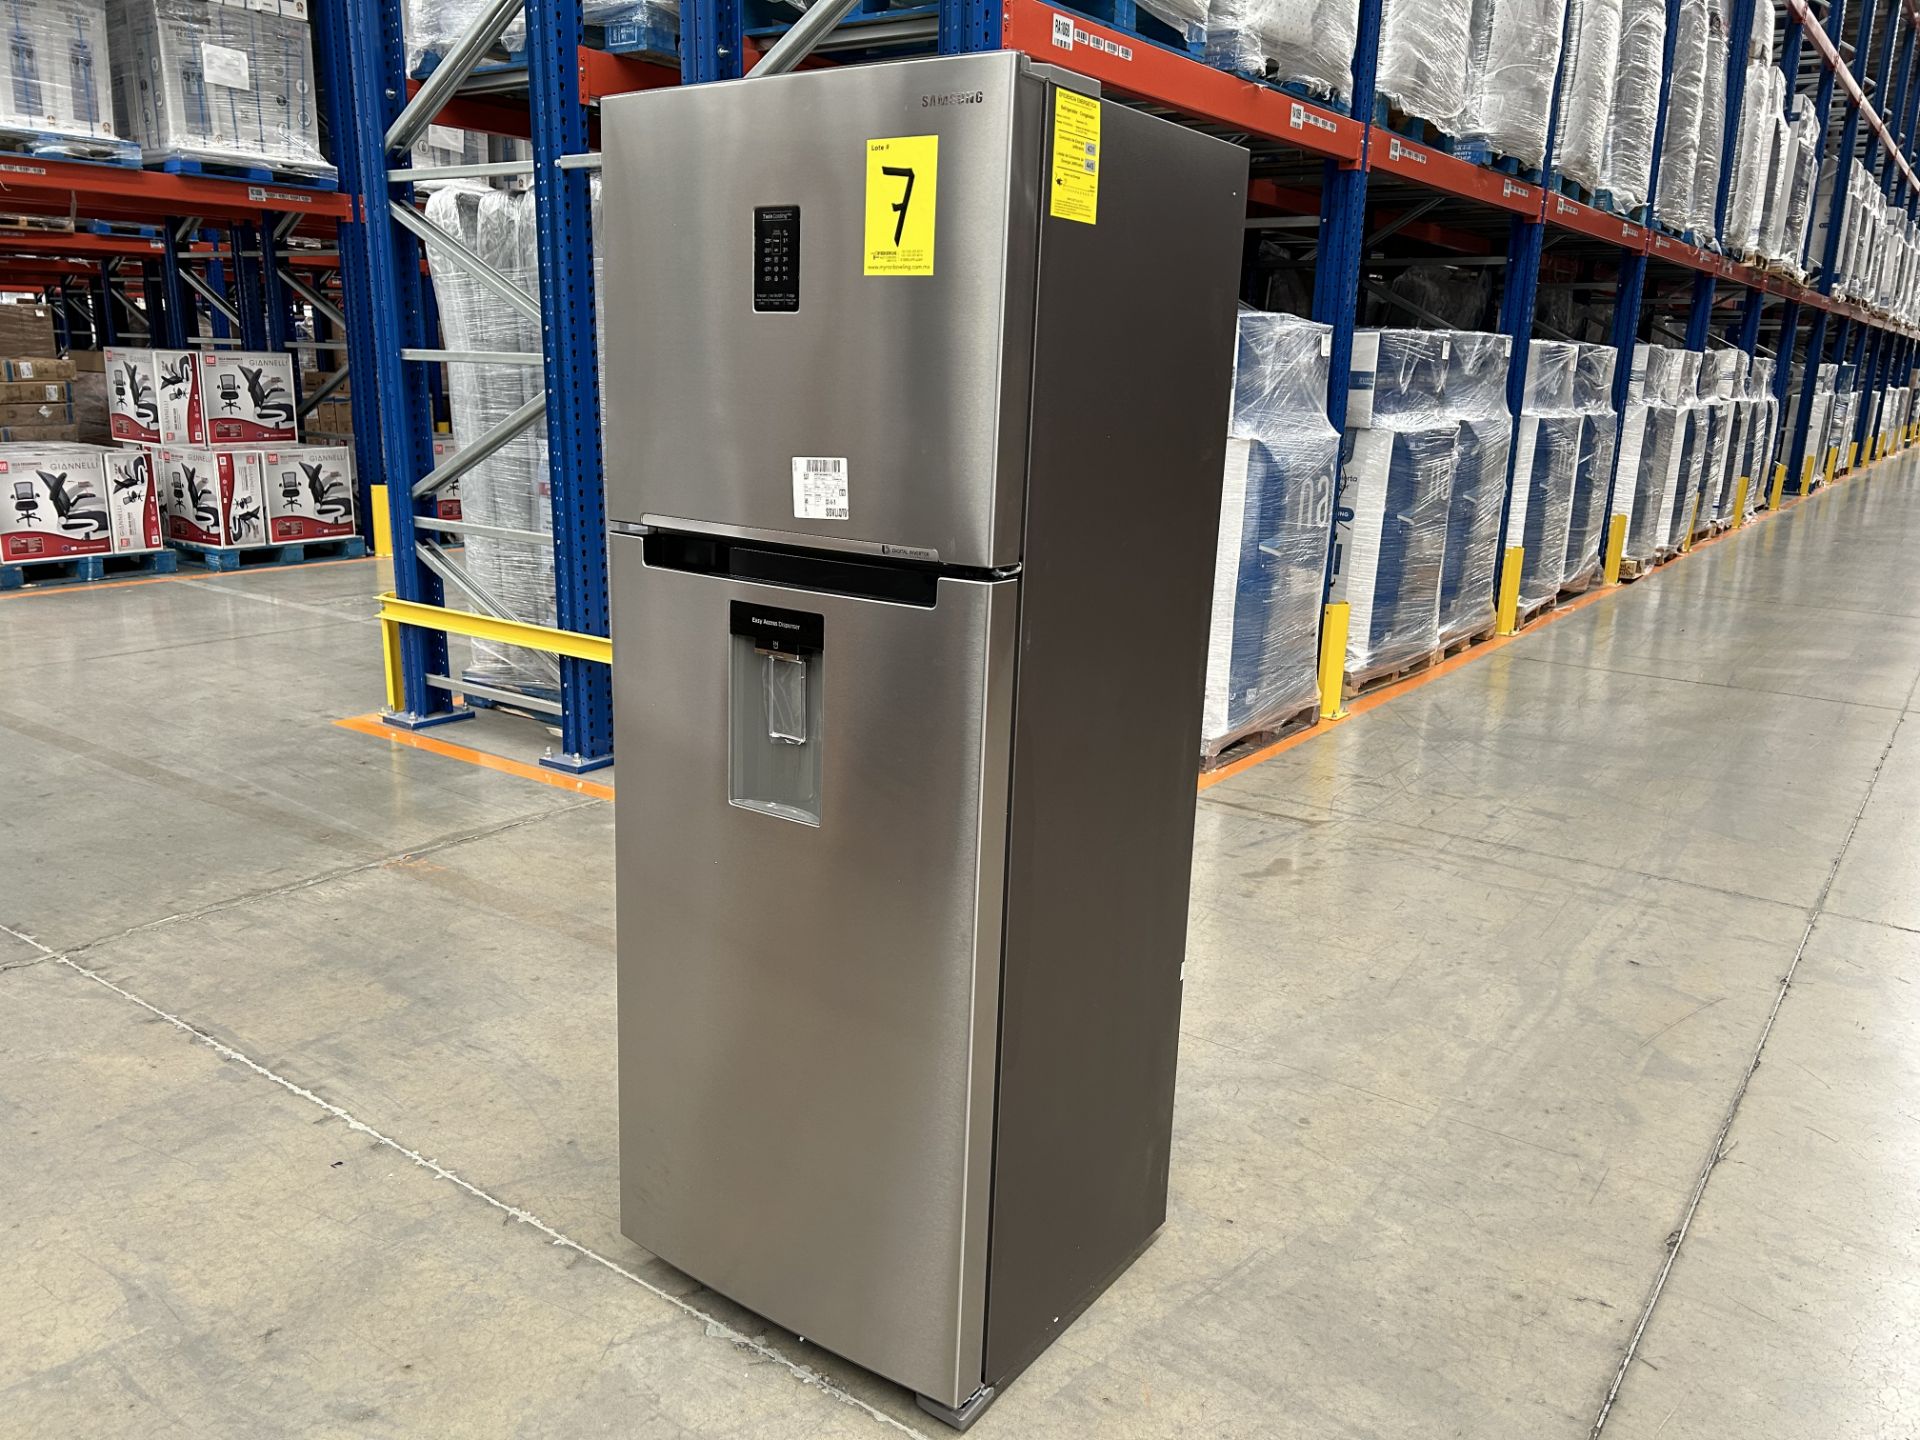 (NUEVO) Lote de 1 Refrigerador con dispensador de agua Marca SAMSUNG, Modelo RT38A5982SL, Serie 084 - Image 3 of 5